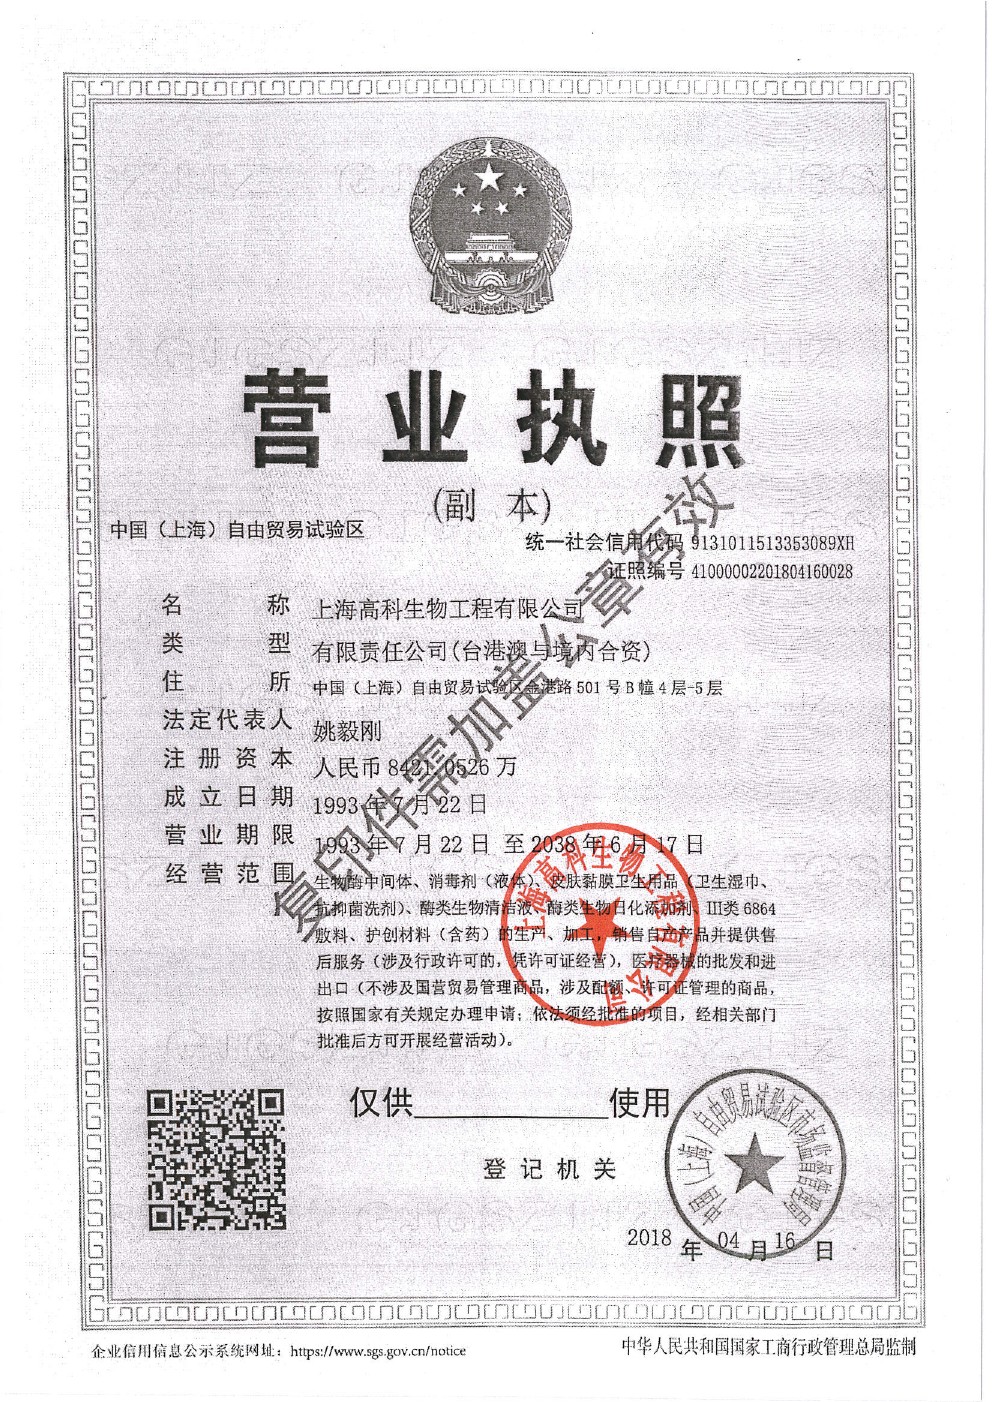 上海高科生物工程-营业执照